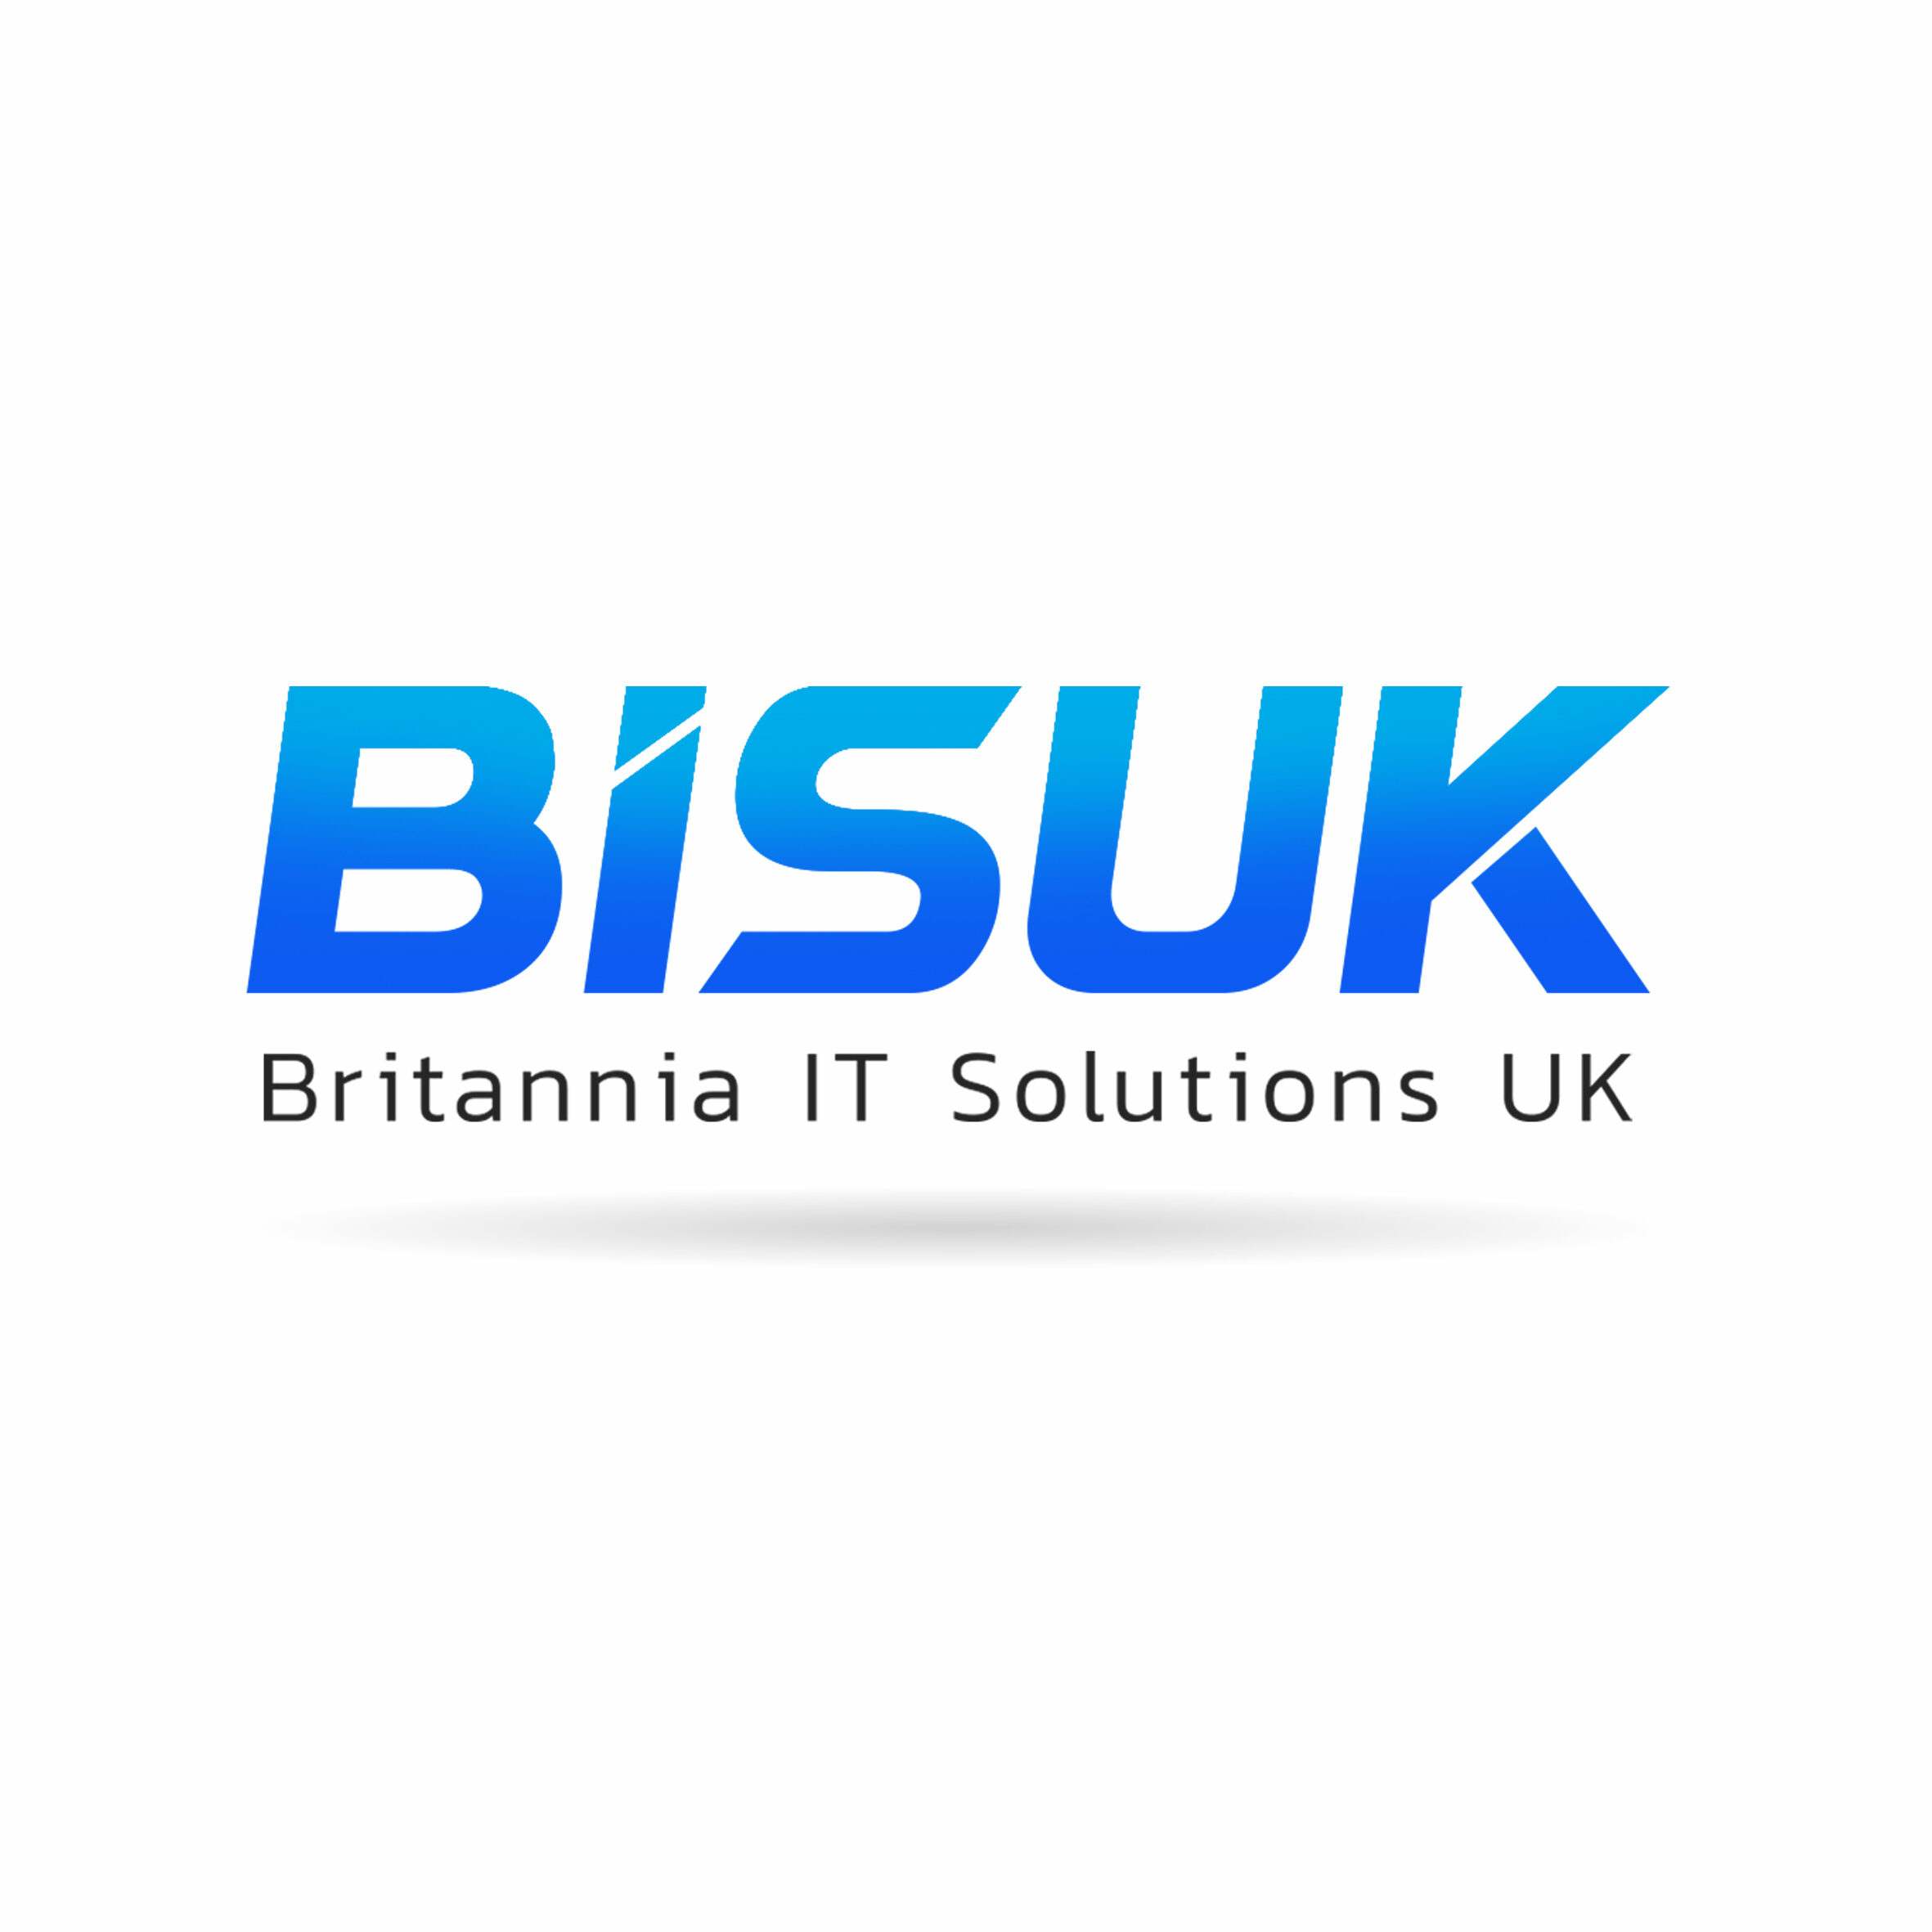 Britannia IT Solutions UK (BISUK) logo